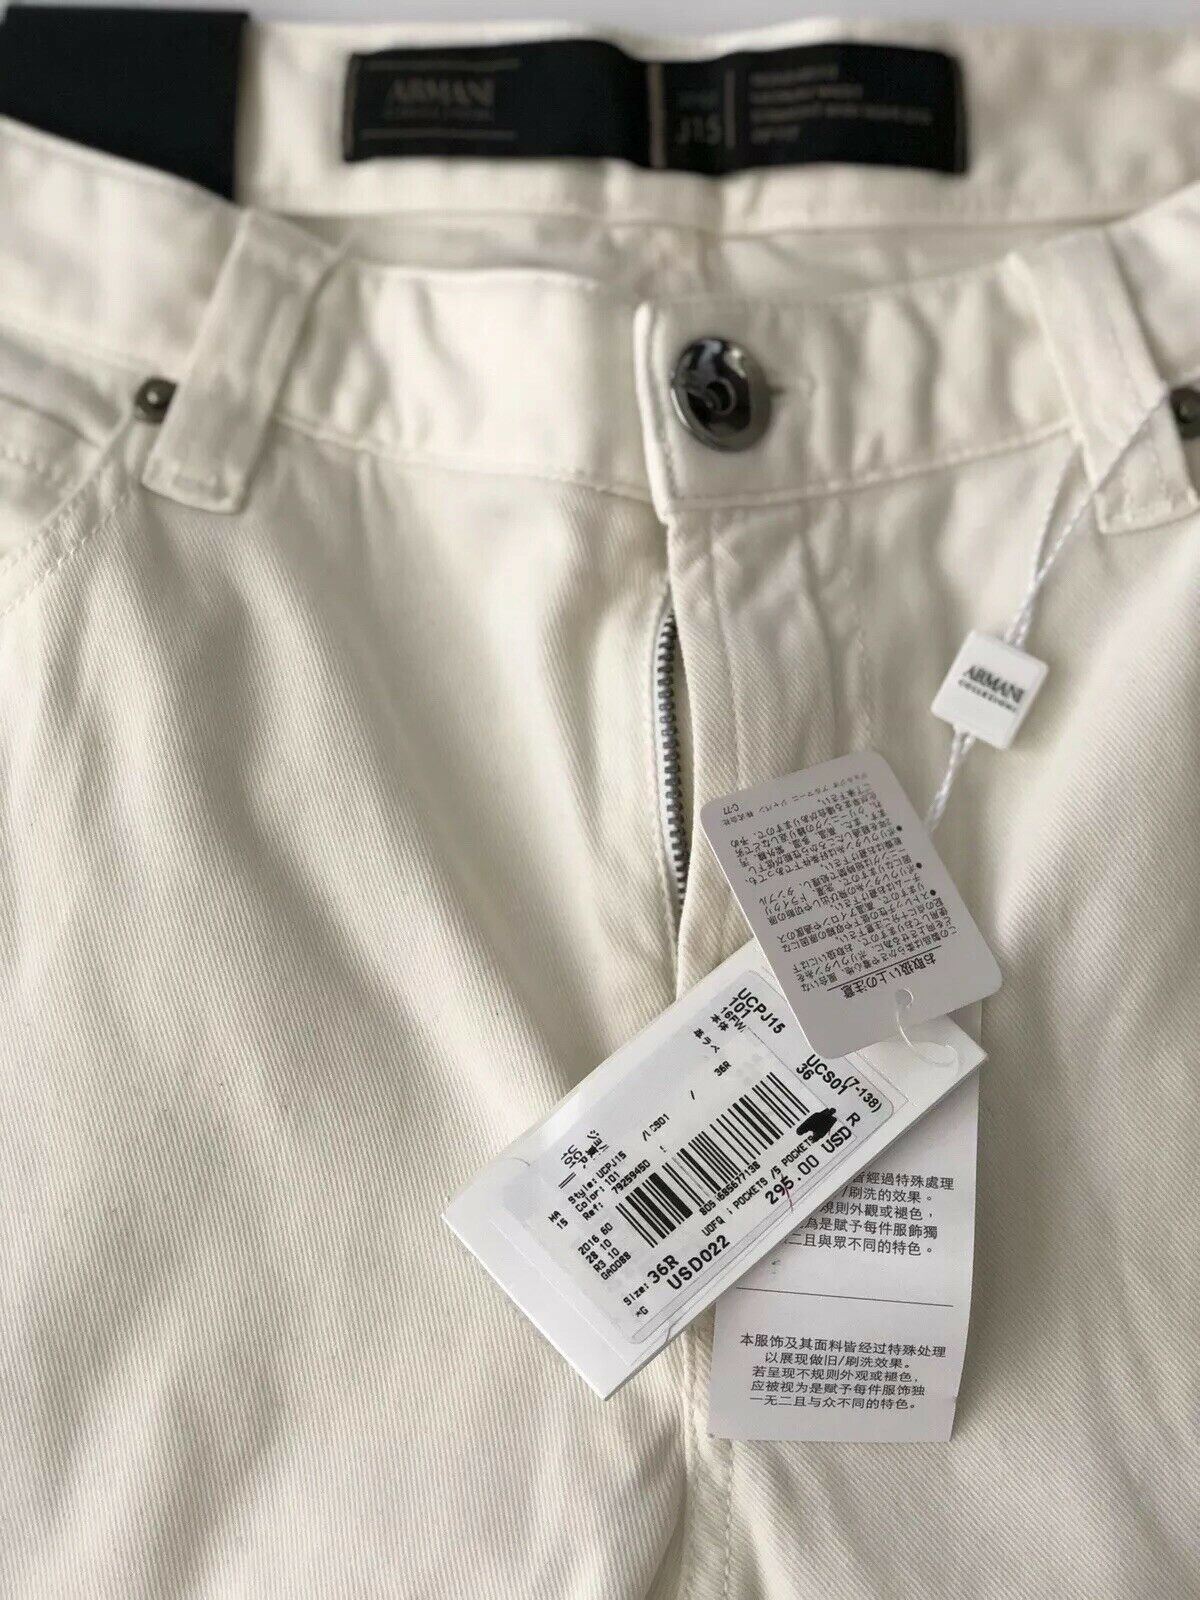 NWT Armani Collezioni Mens White Jeans Size 36 US (52 Euro)